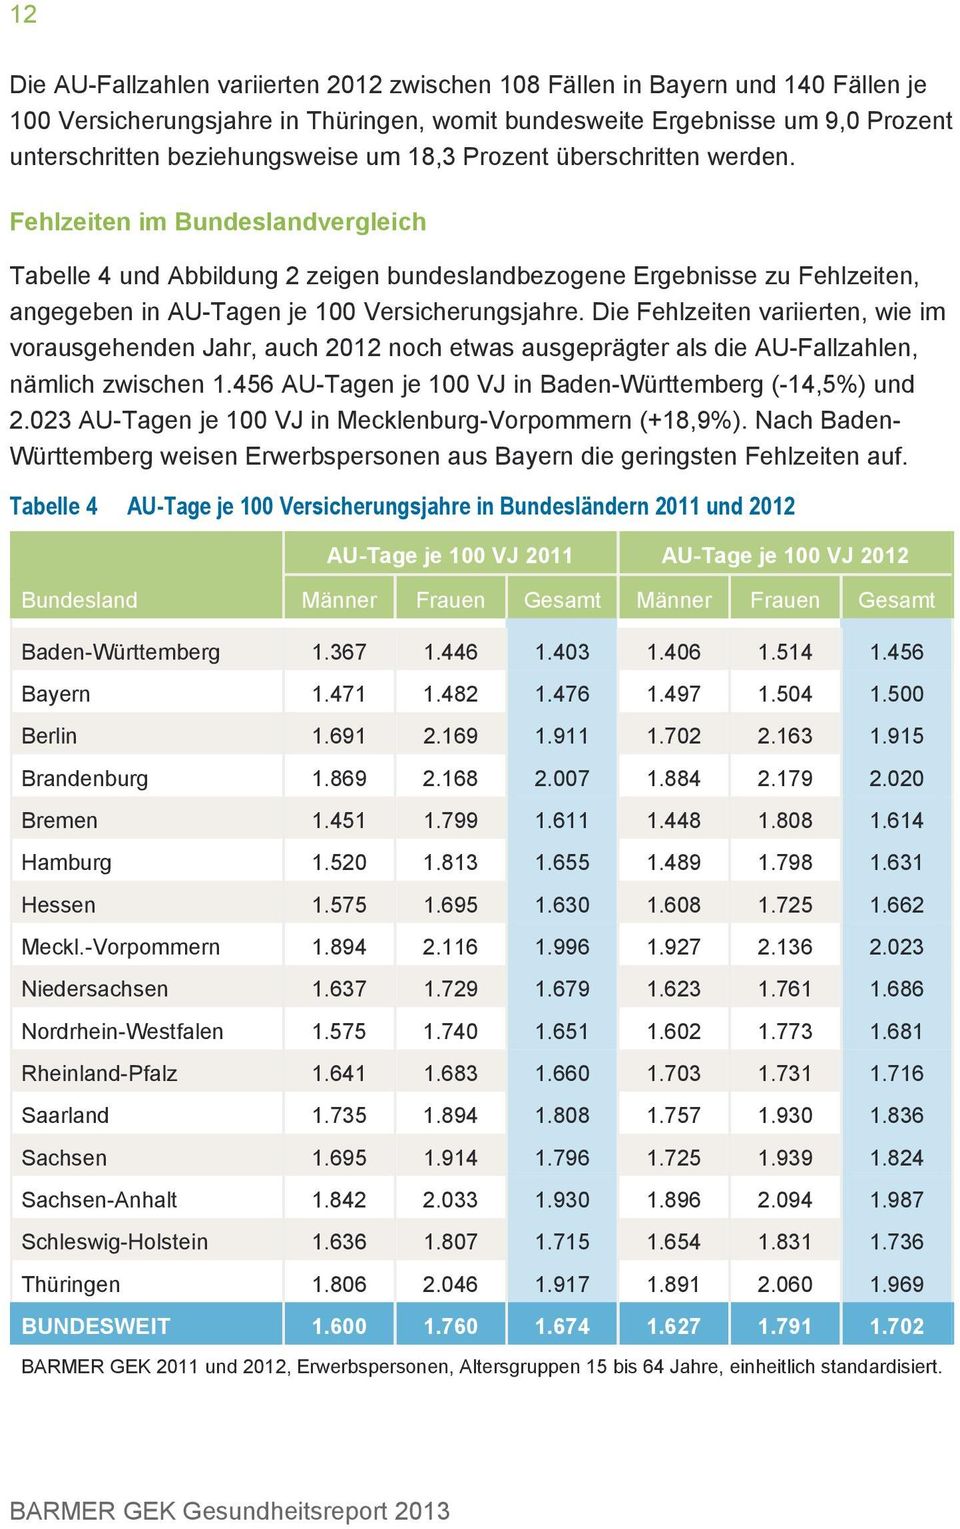 Die Fehlzeiten variierten, wie im vorausgehenden Jahr, auch 2012 noch etwas ausgeprägter als die AU-Fallzahlen, nämlich zwischen 1.456 AU-Tagen je 100 VJ in Baden-Württemberg (-14,5%) und 2.